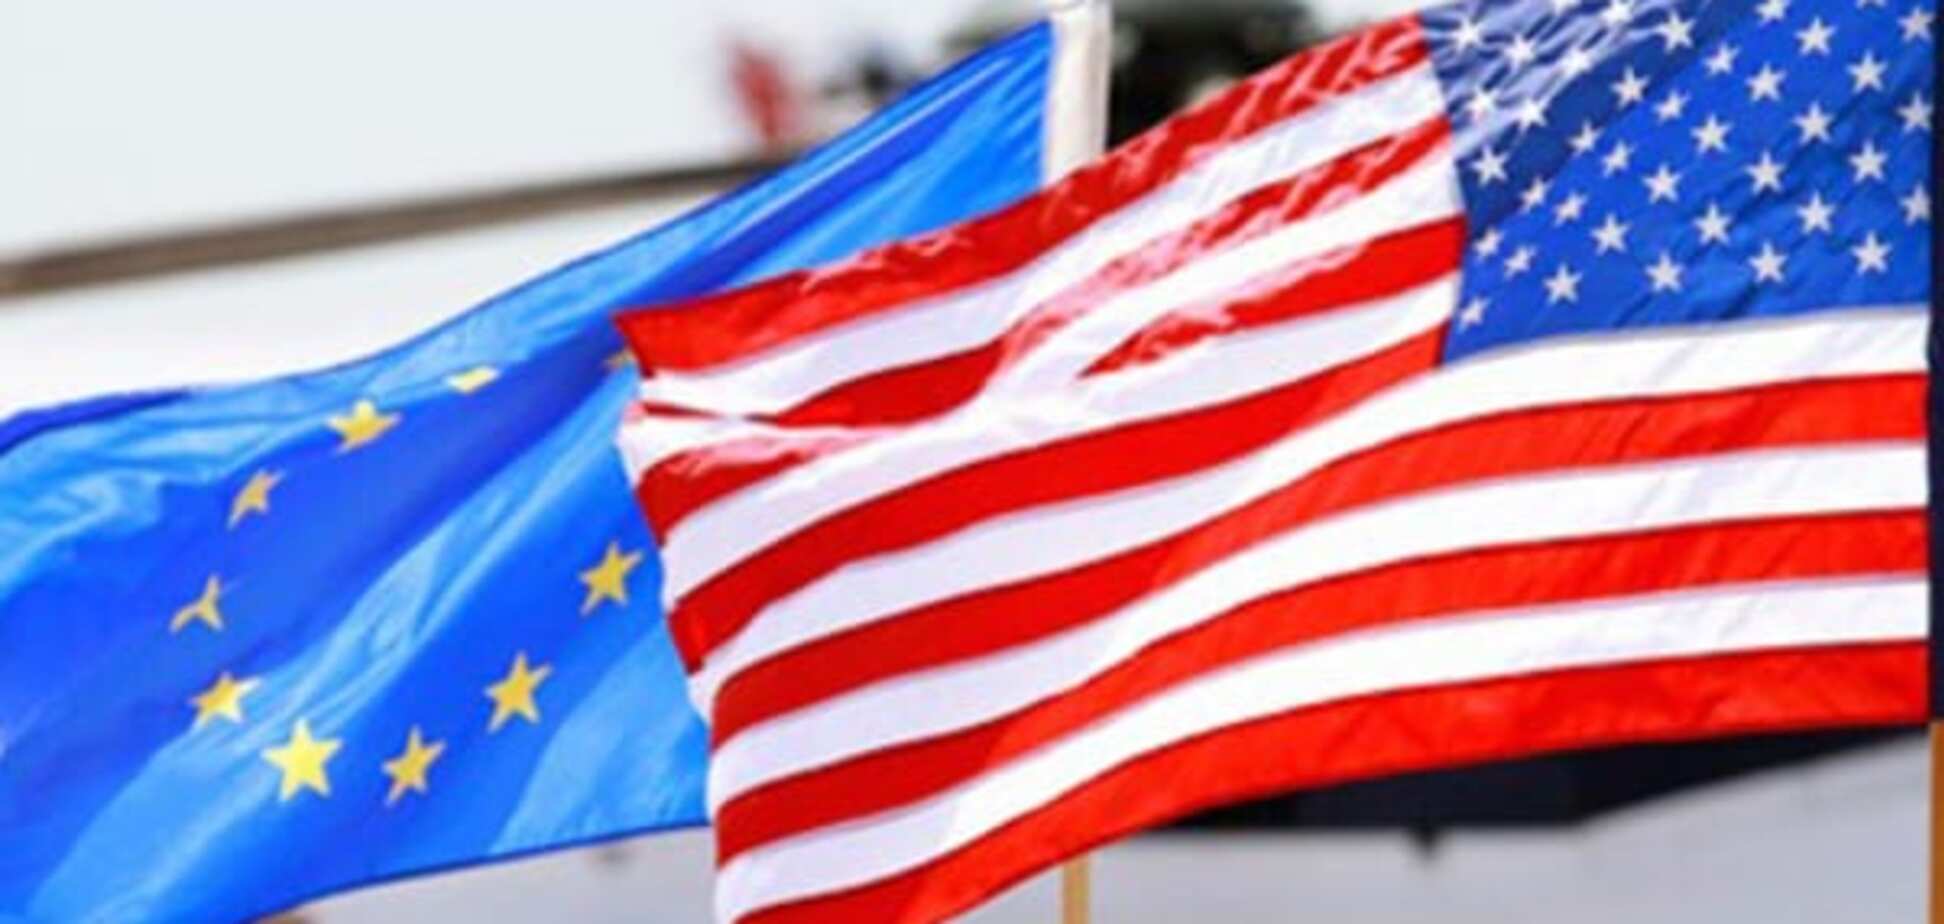 ЕС и США сохранят санкции против России в 2016 году - СМИ